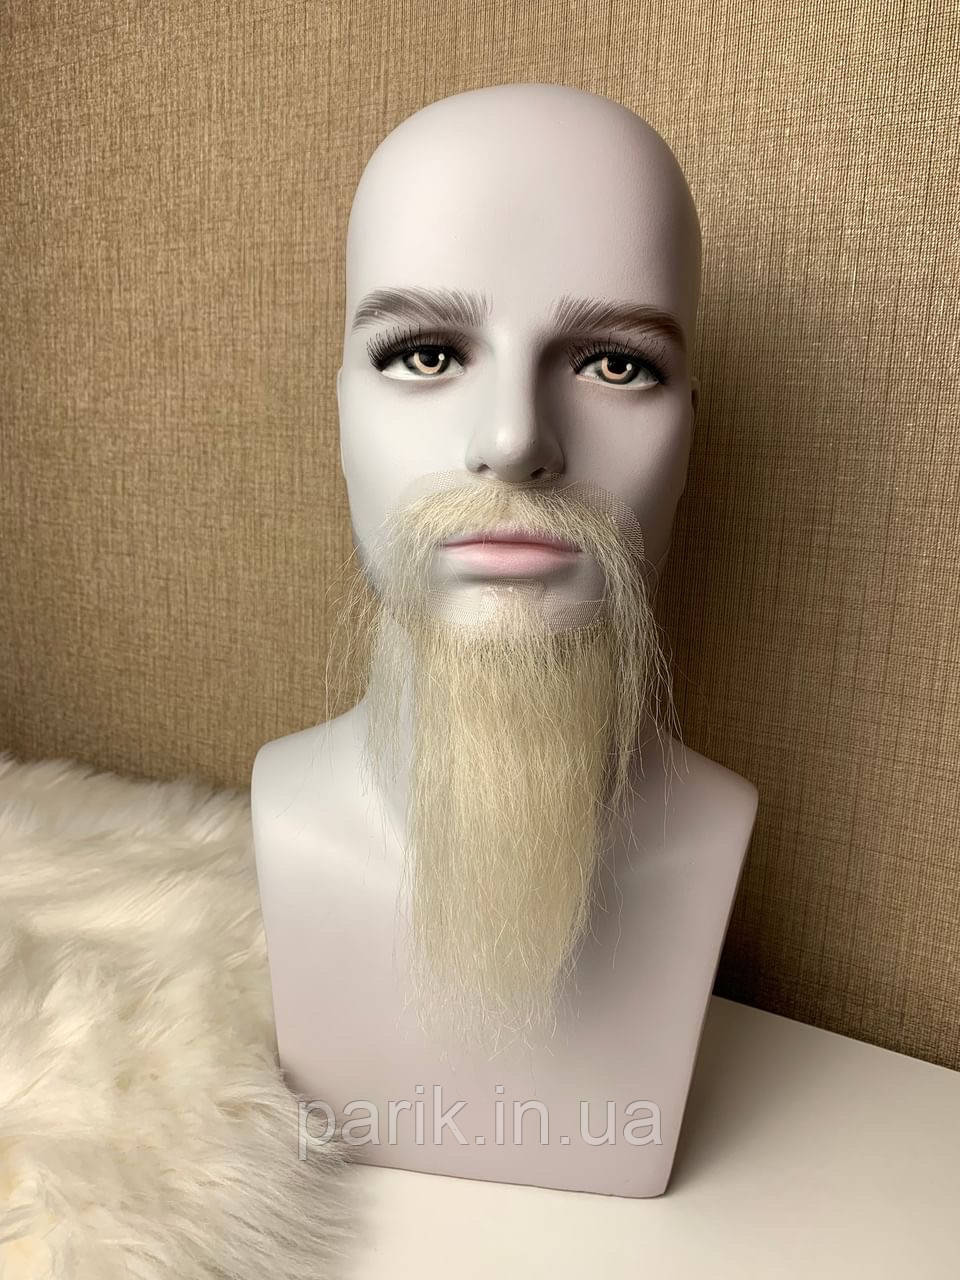 Борода та вуса реалістичні білі — накладка на сітці сивого кольору осяг, сива борода старого, діда морозу